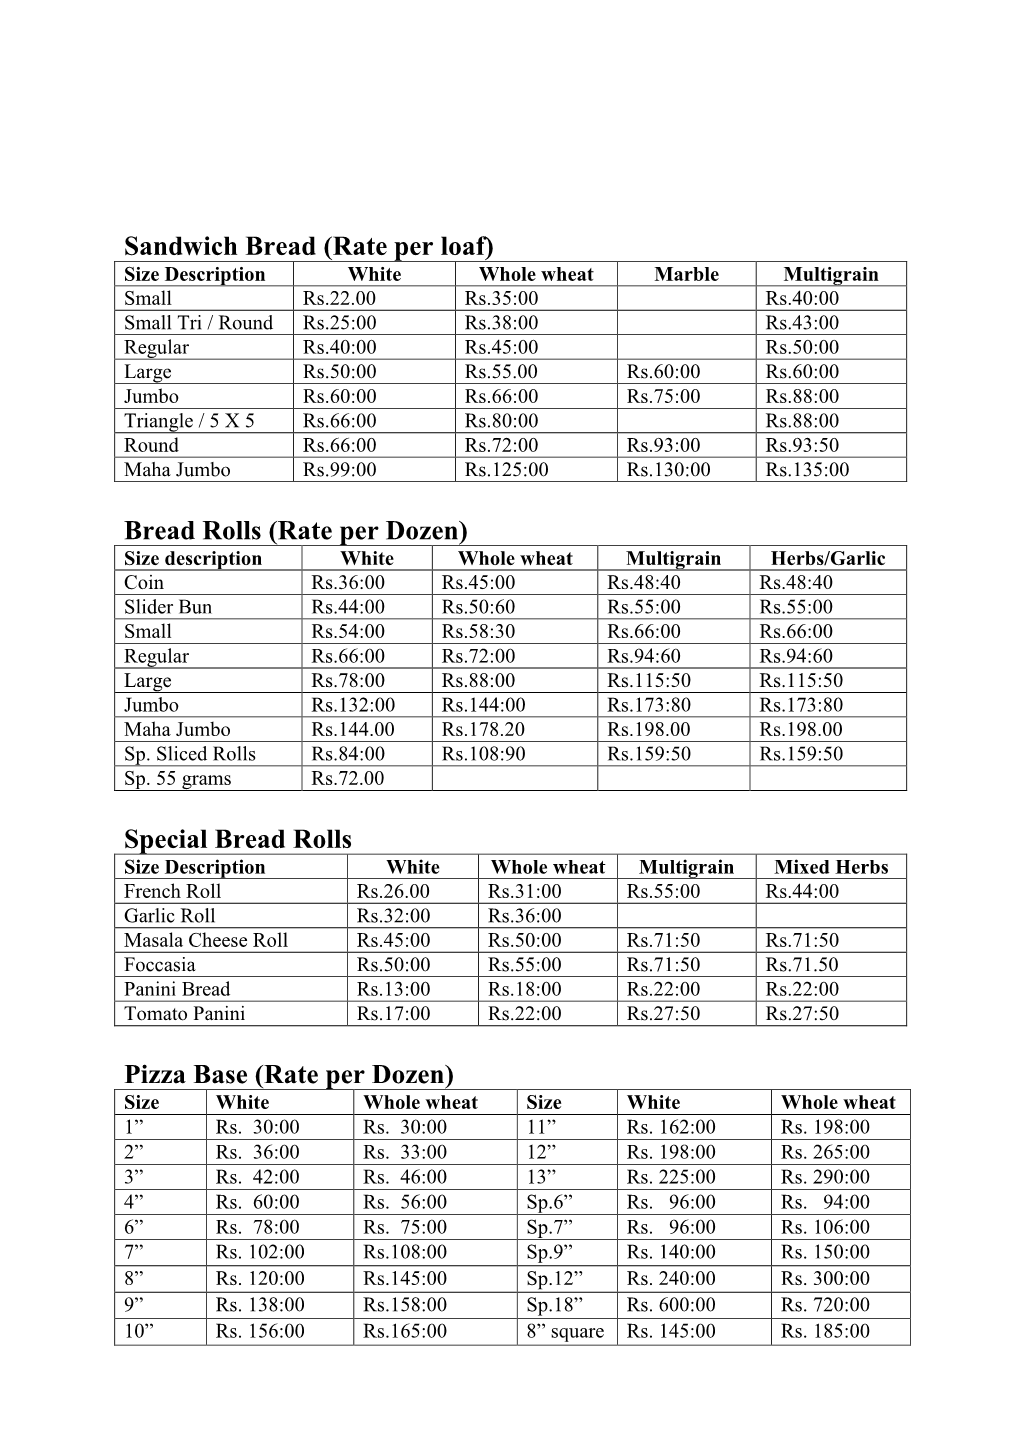 Sandwich Bread (Rate Per Loaf) Bread Rolls (Rate Per Dozen) Special Bread Rolls Pizza Base (Rate Per Dozen)